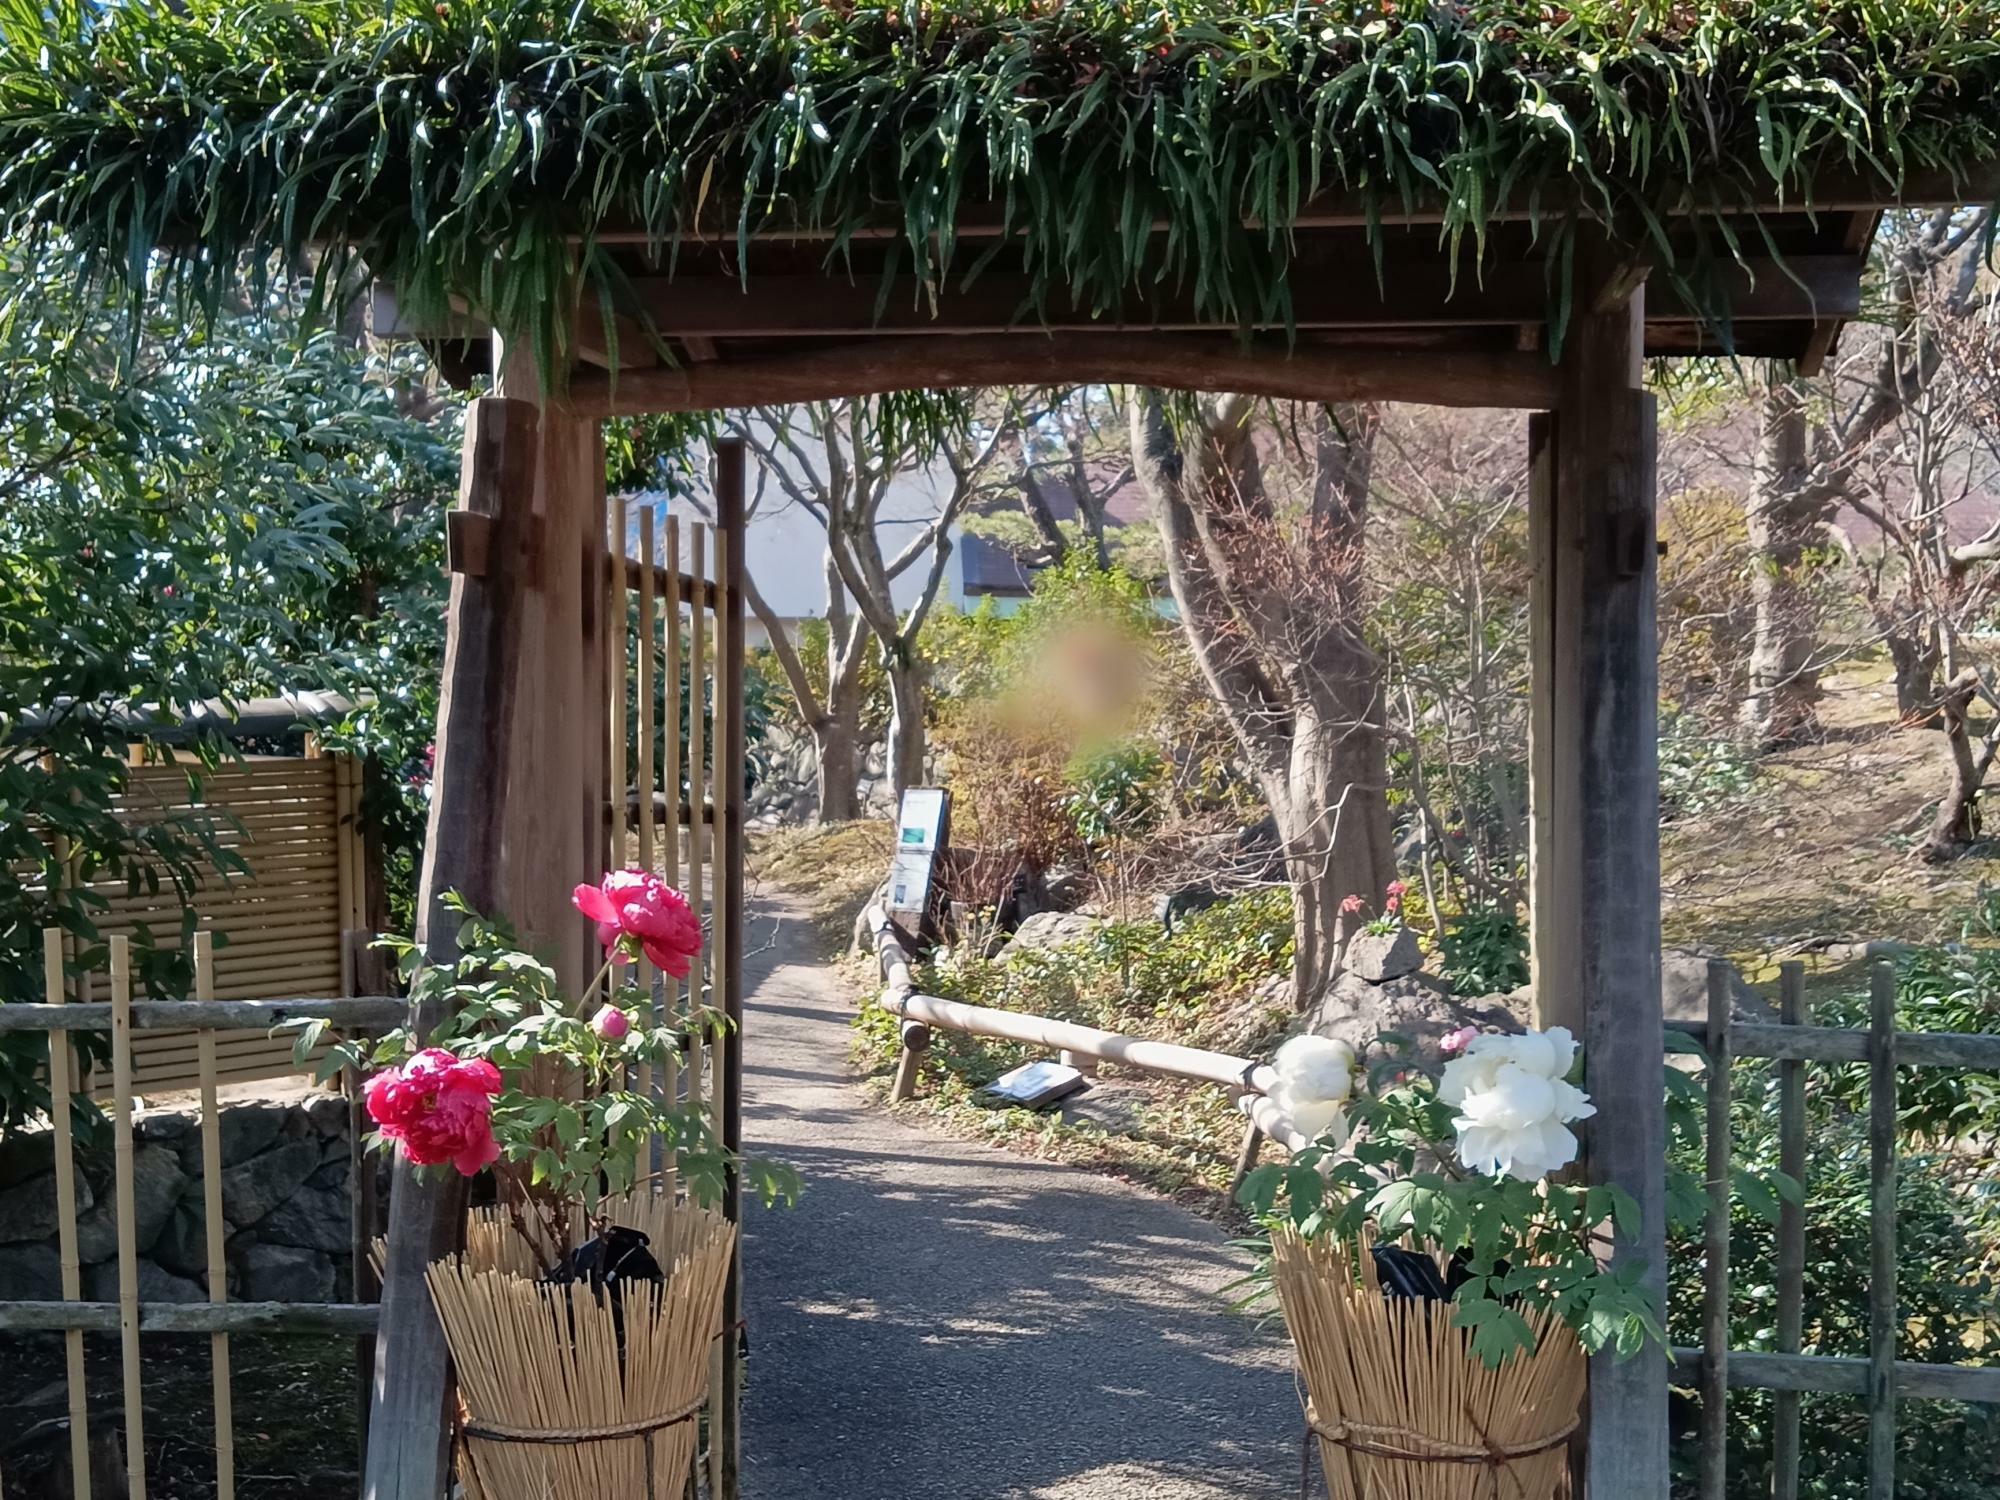 松や苔、石を組み合わせた枯山水を楽しめる本格的な回遊式日本庭園です